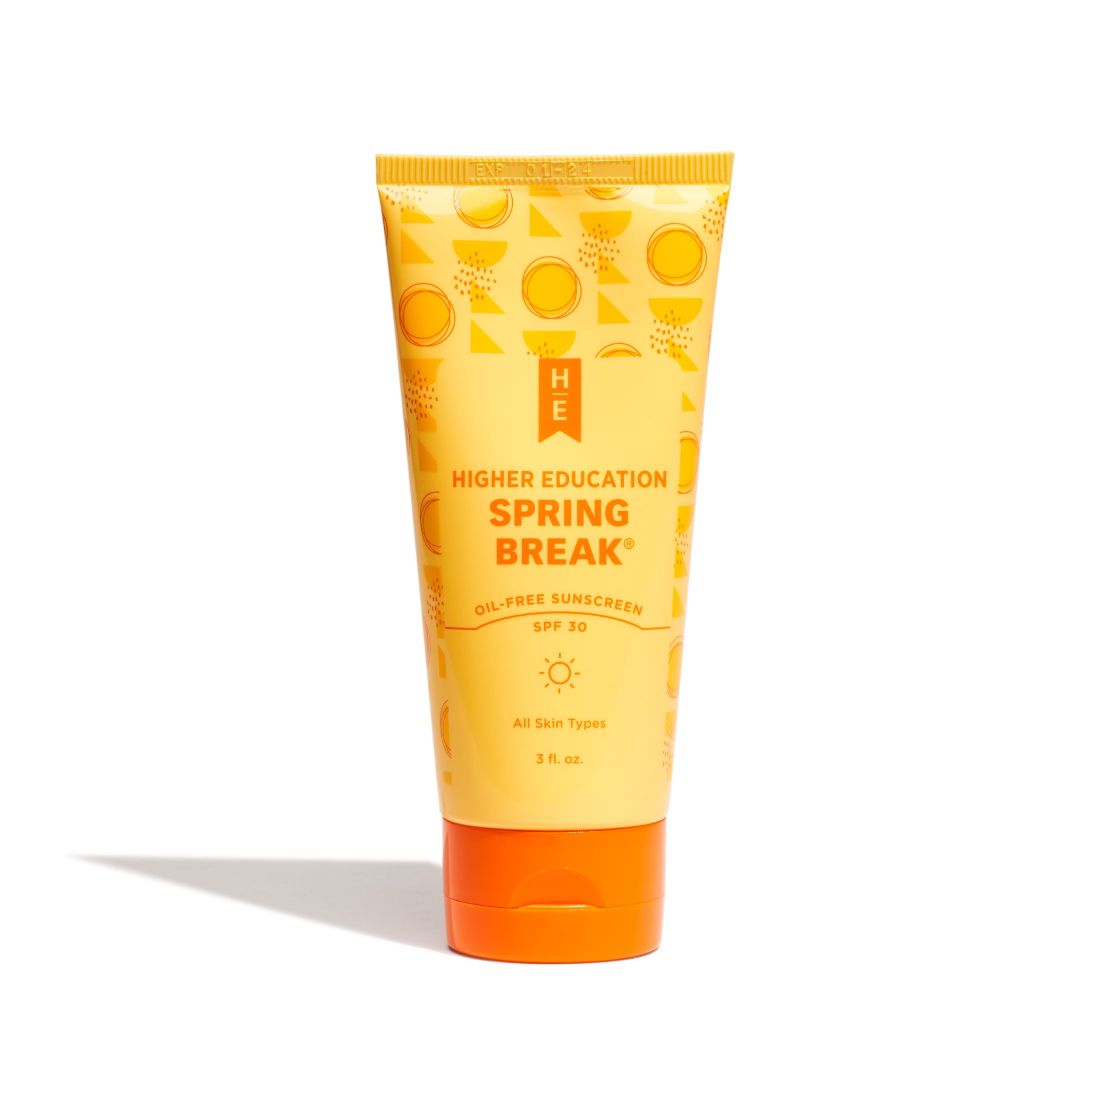 SPRING BREAK Oil-Free Sunscreen SPF 30 (All Skin Types)